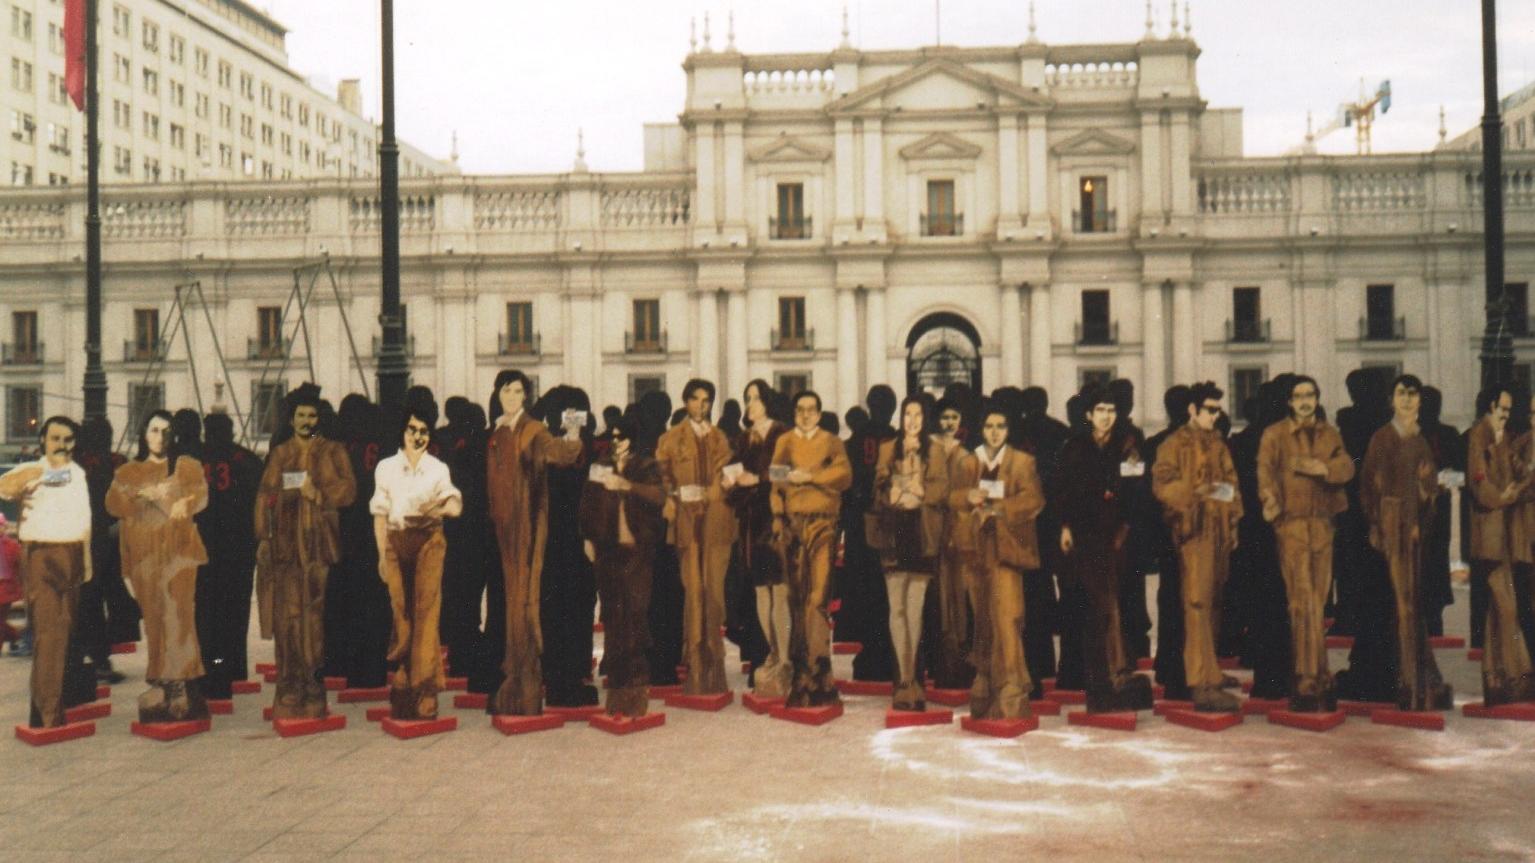 Fotografía de figuras de personas situadas frente a La Moneda